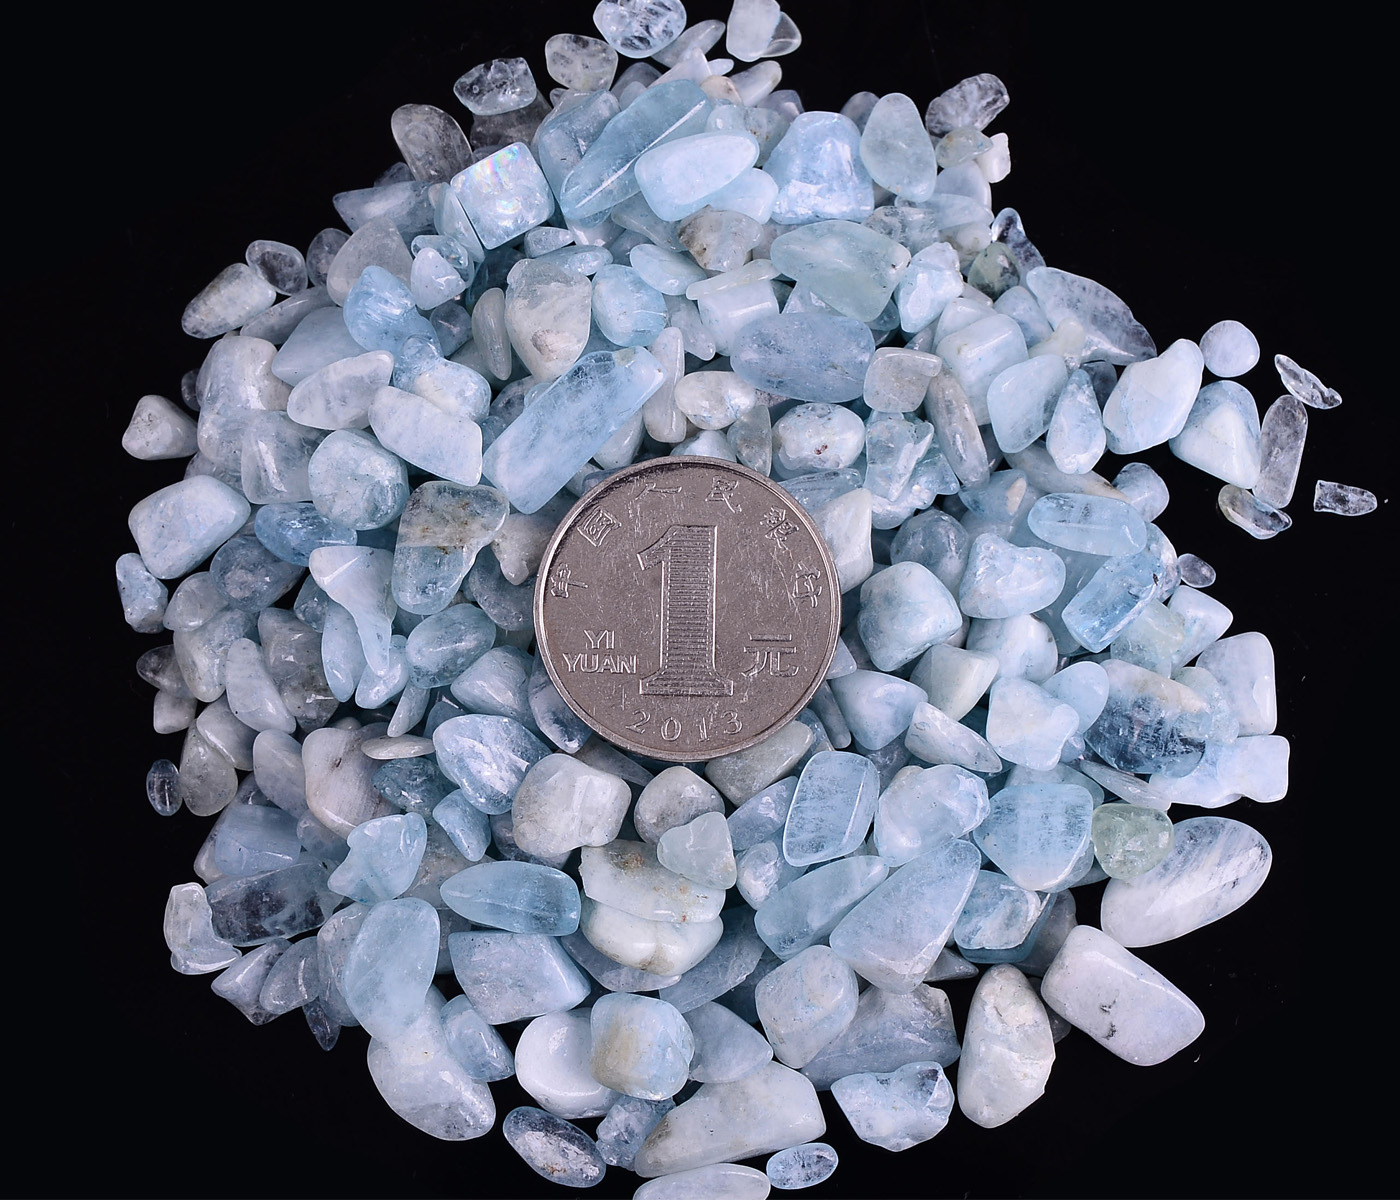 天然水晶消磁石碎石碎水晶海蓝宝青金橄榄石天河石碎石送消磁碗 - 图1